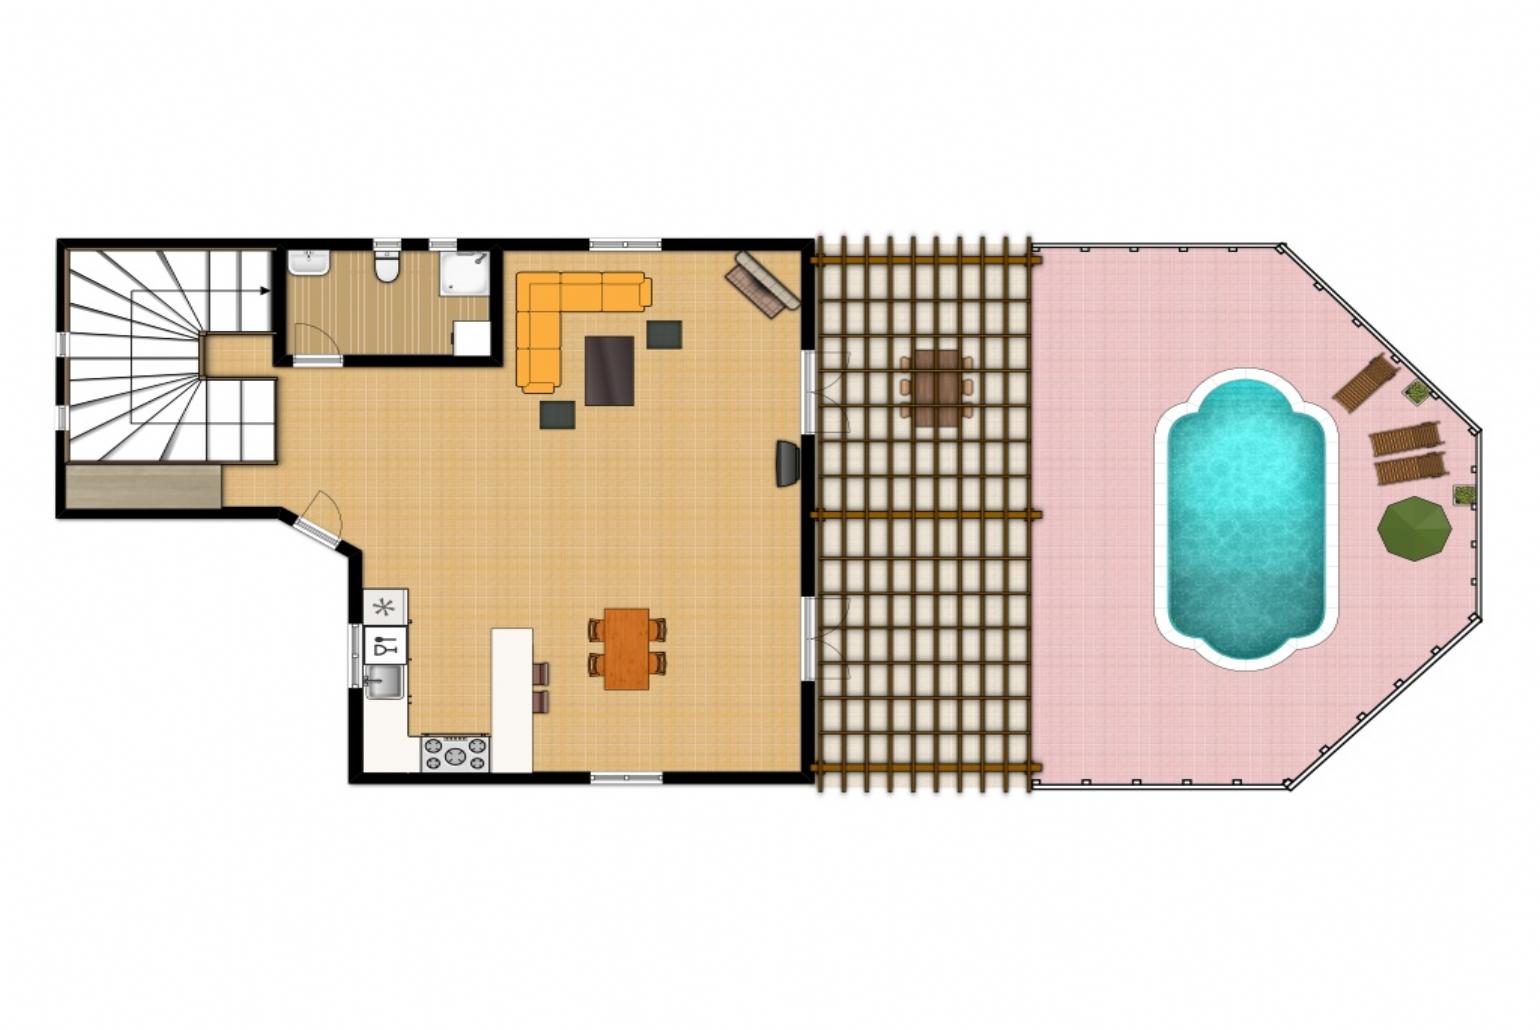 Floor Plan: Ground Floor